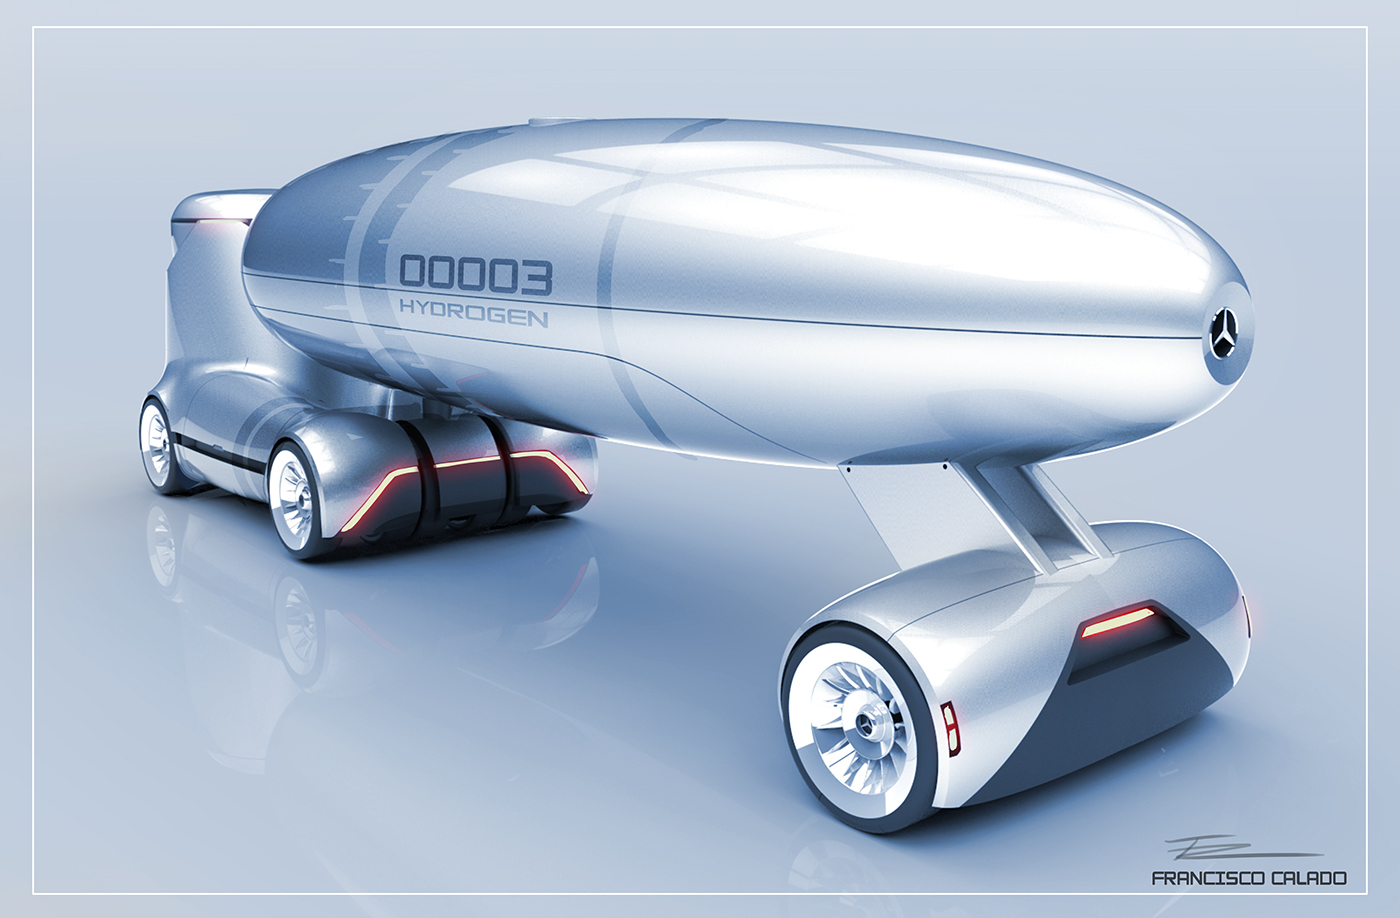 Mercedes Truck truck design car design truck liquid transport Transportation Design Francisco Calado mercedes concept 